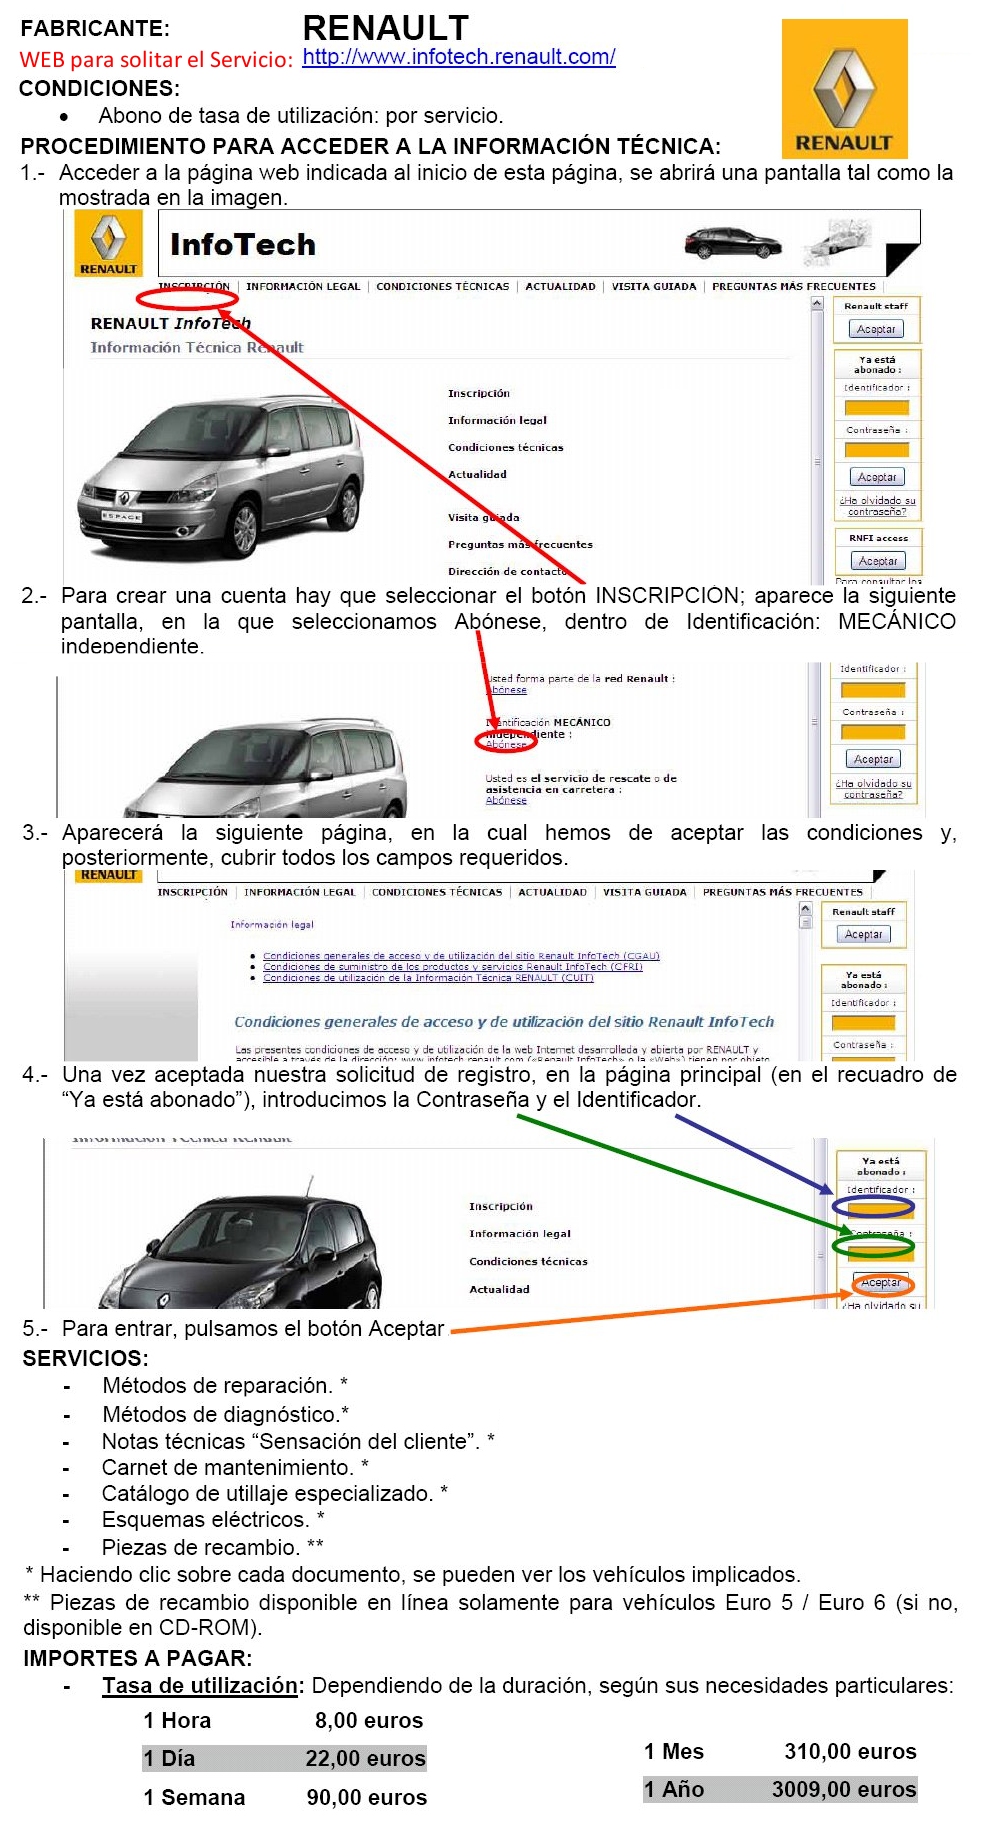 Informacion tecnica de Renault para solicitar servicios